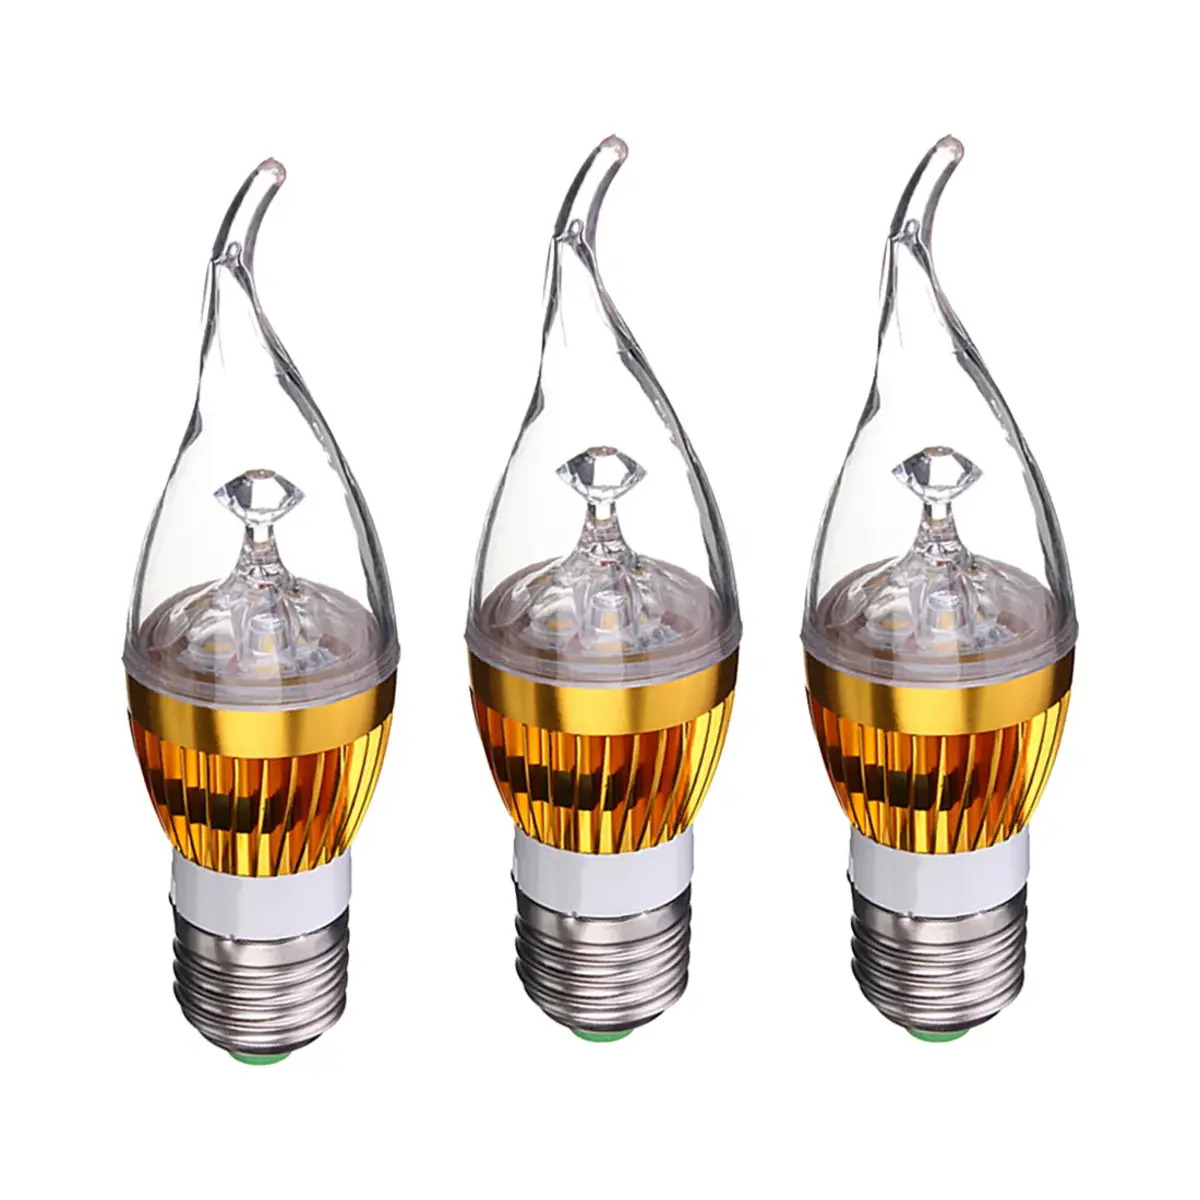 10 Best Candelabra Led Bulbs For 2023 1695959980 